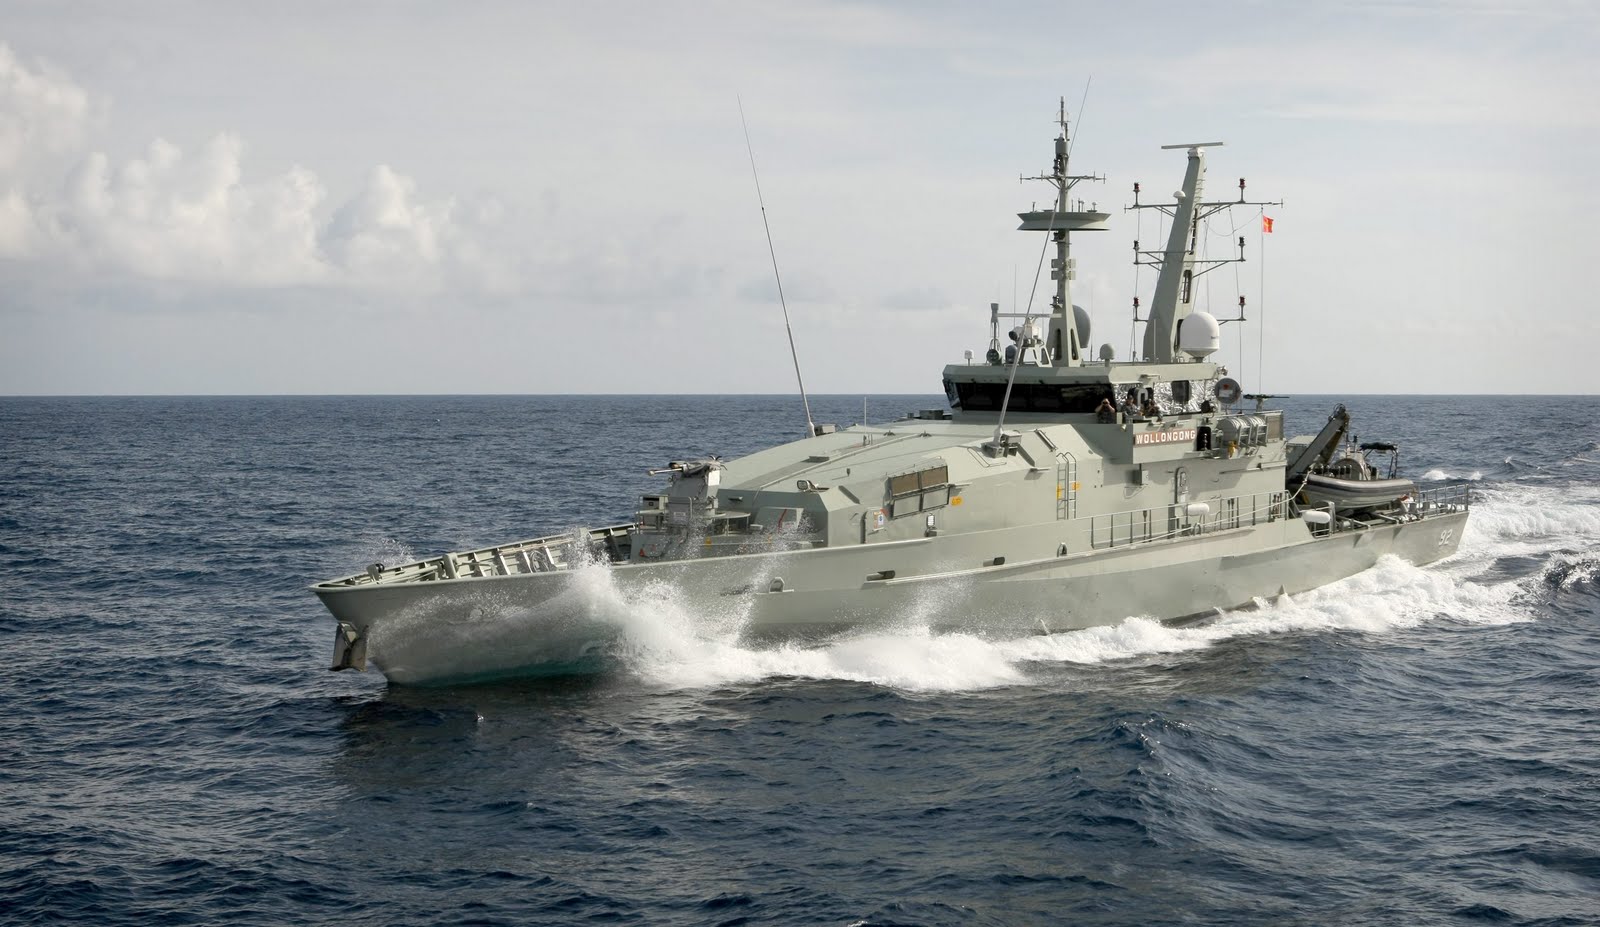 HMAS Larrakia (ACPB 84) #5